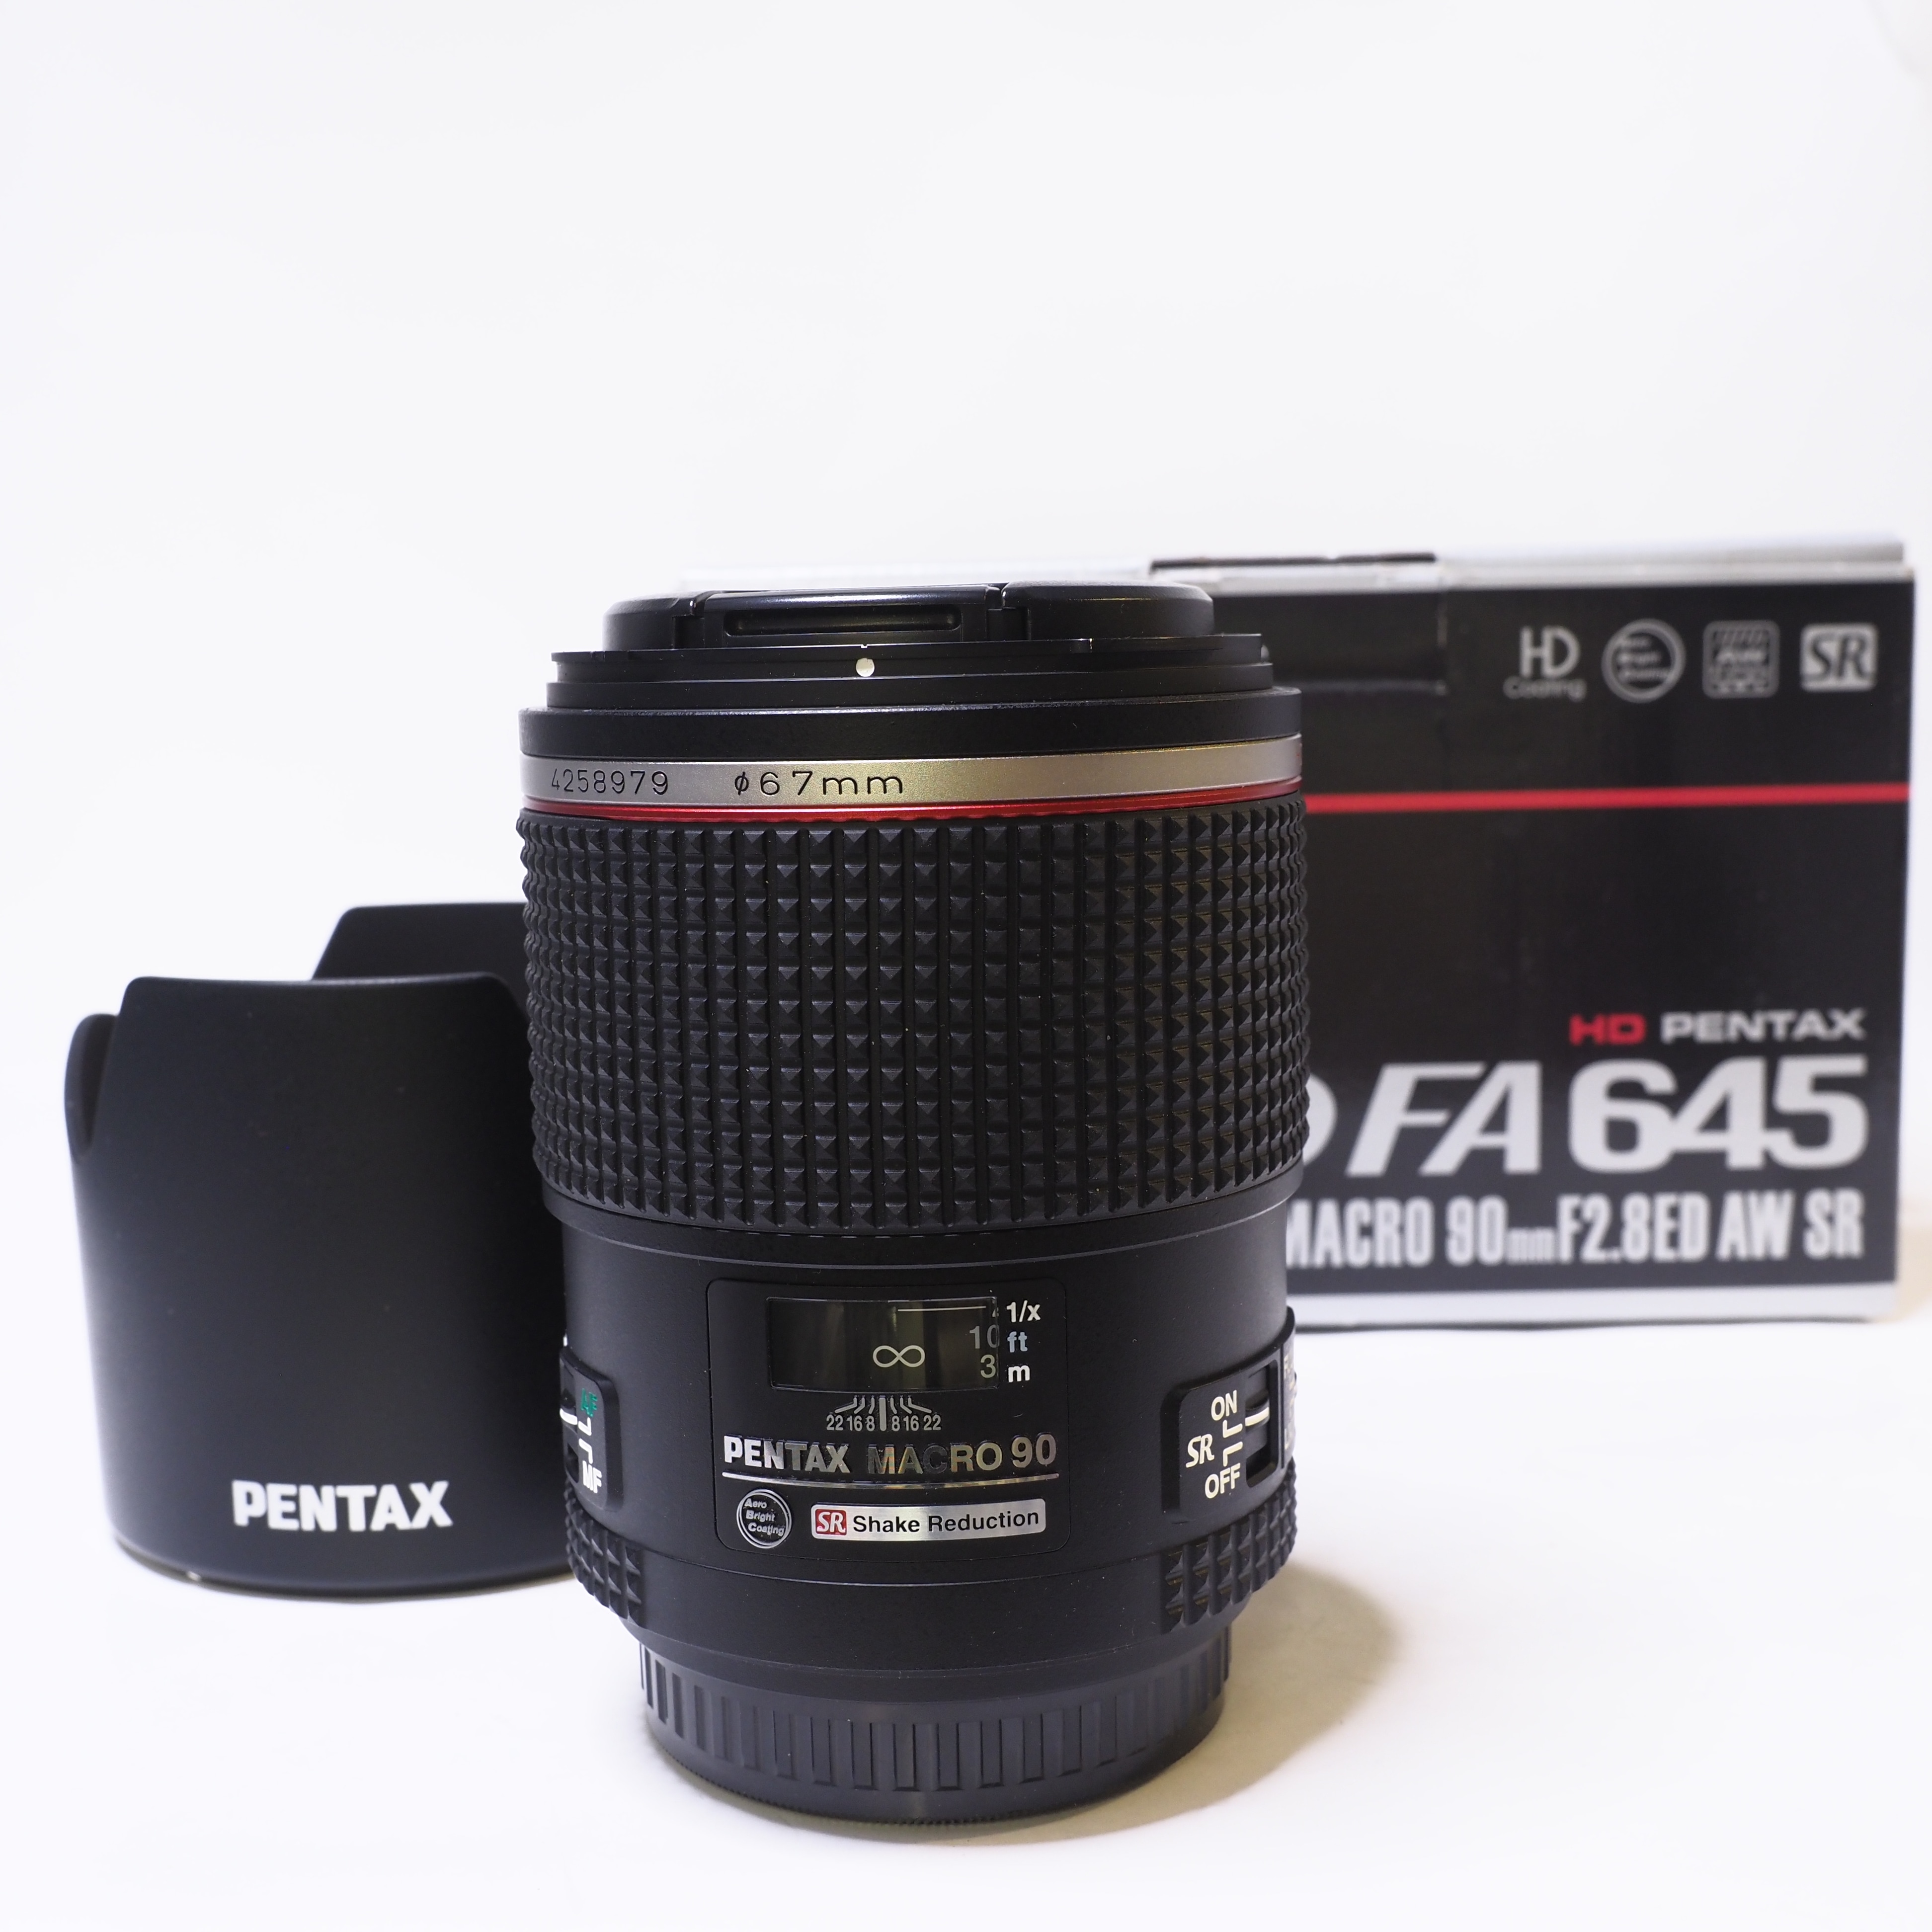 Pentax – D FA 645 90mm f/2.8 Macro ED AW SR - Begagnad